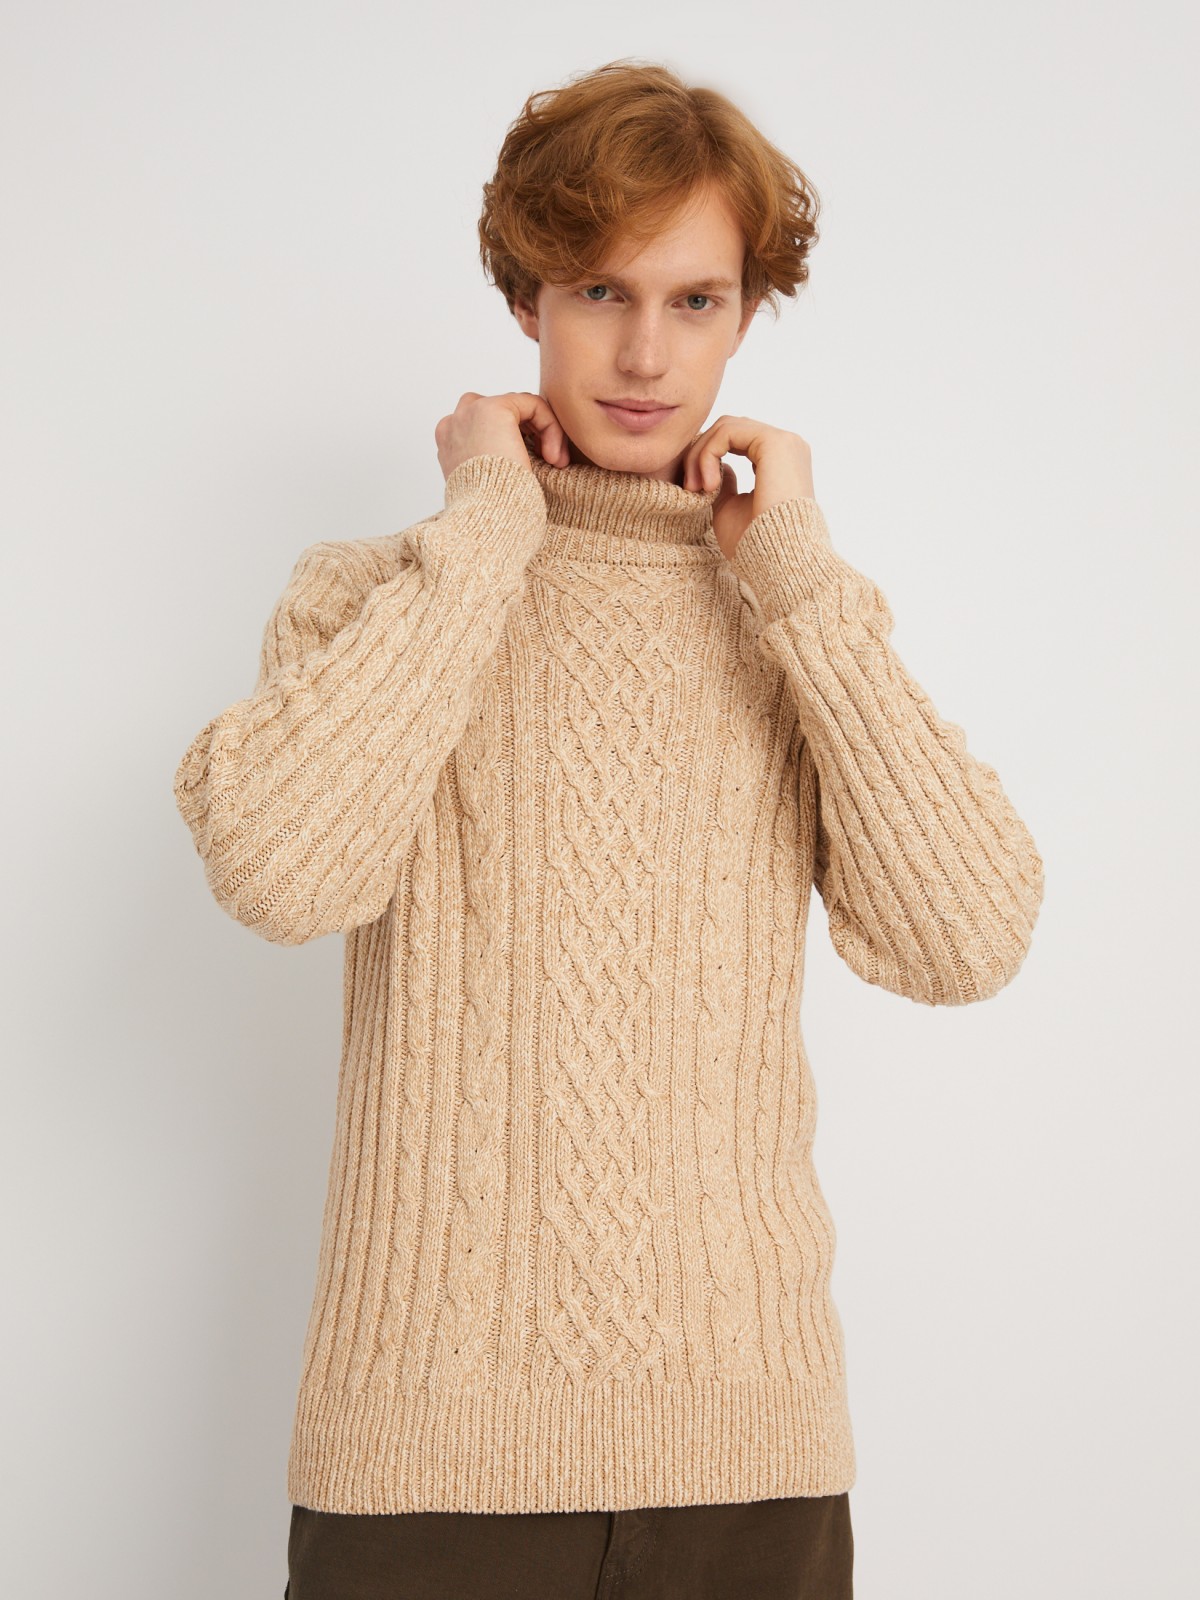 Вязаный свитер с фактурным узором косы